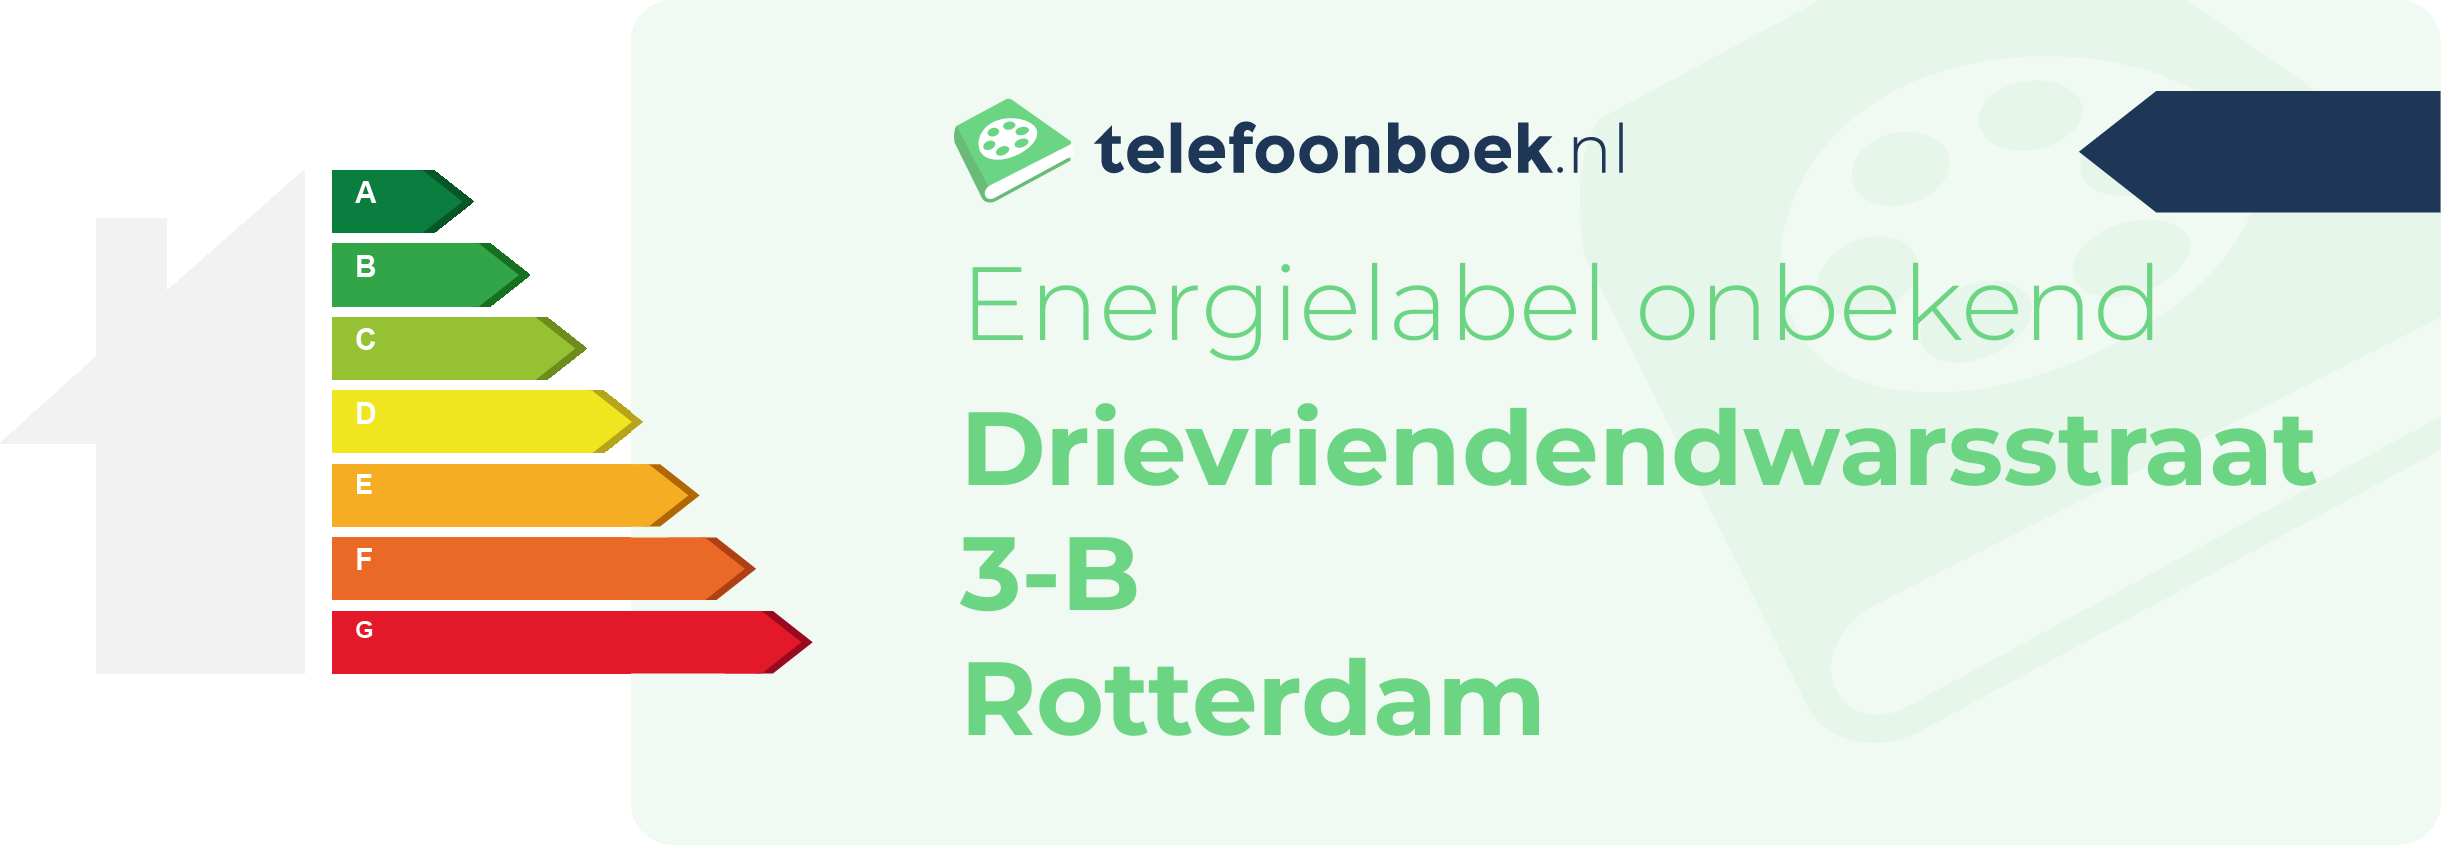 Energielabel Drievriendendwarsstraat 3-B Rotterdam